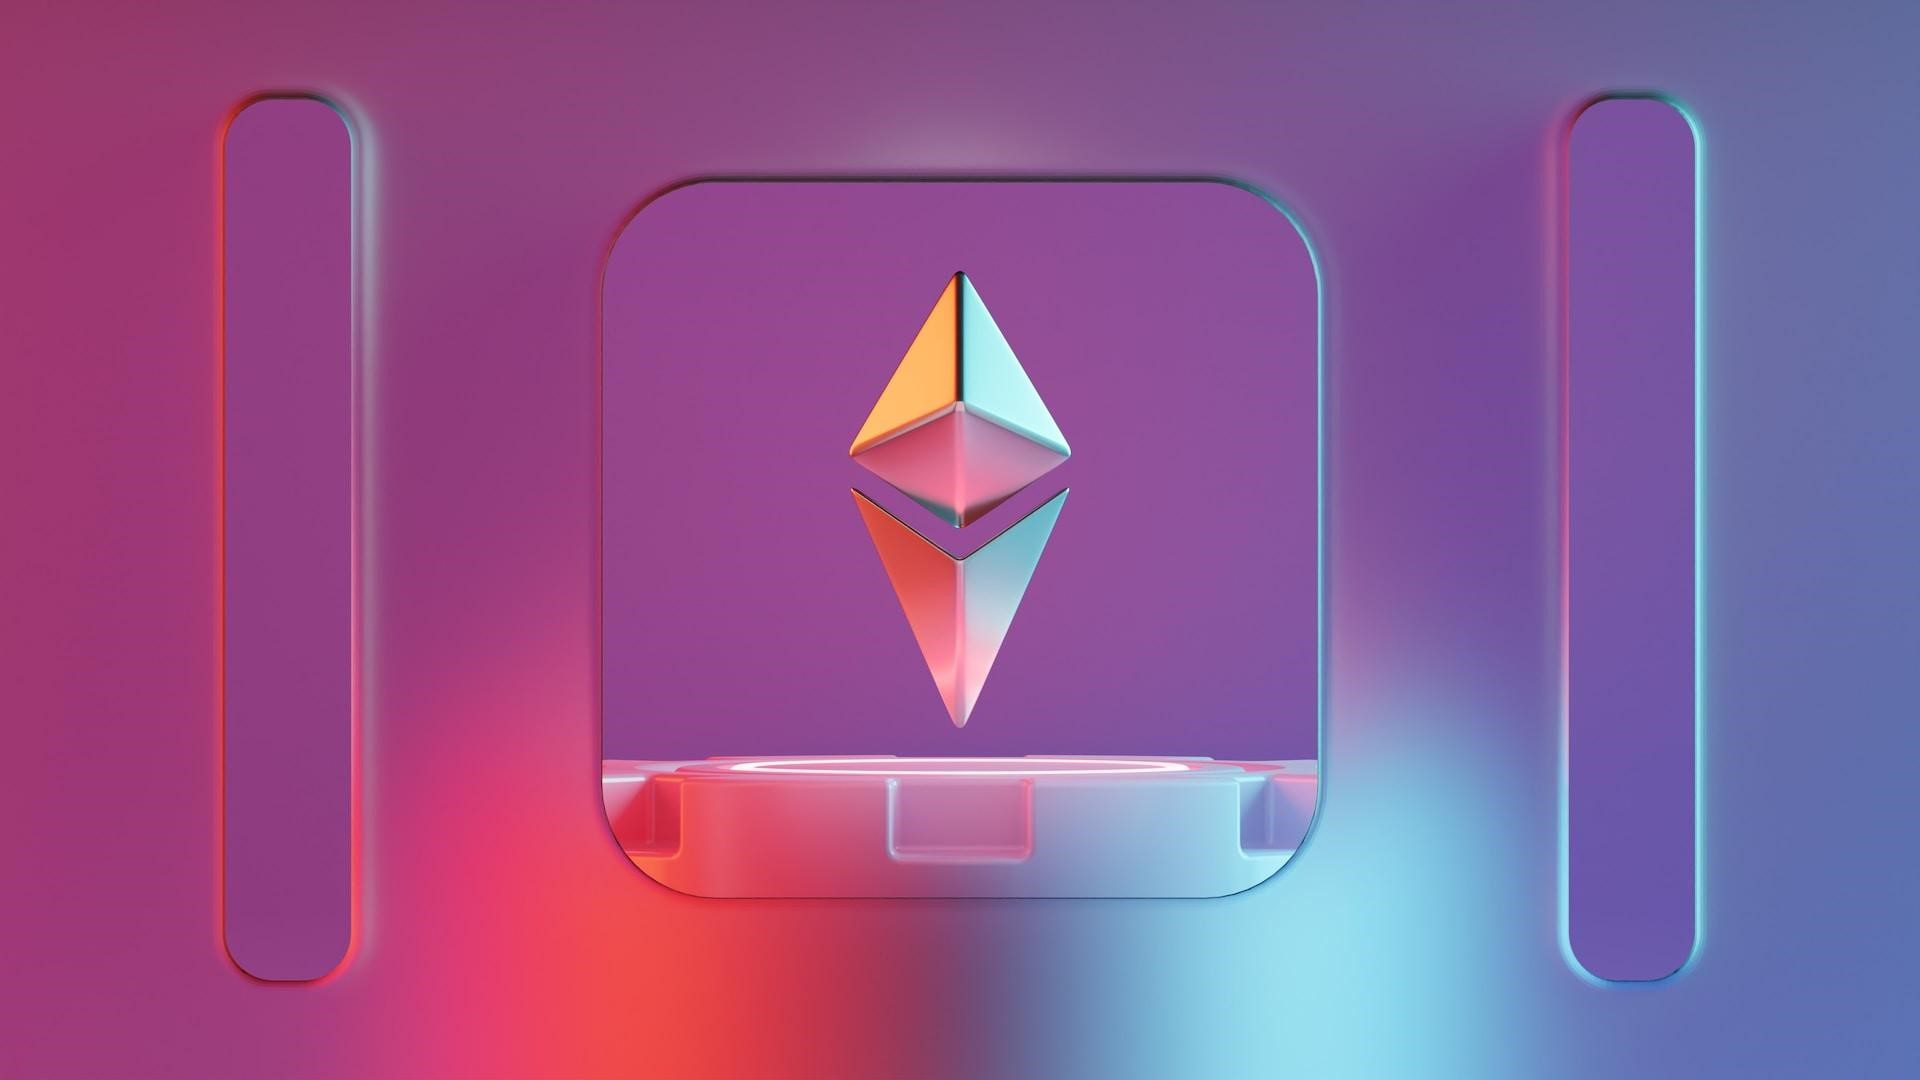 Animated ethereum logo